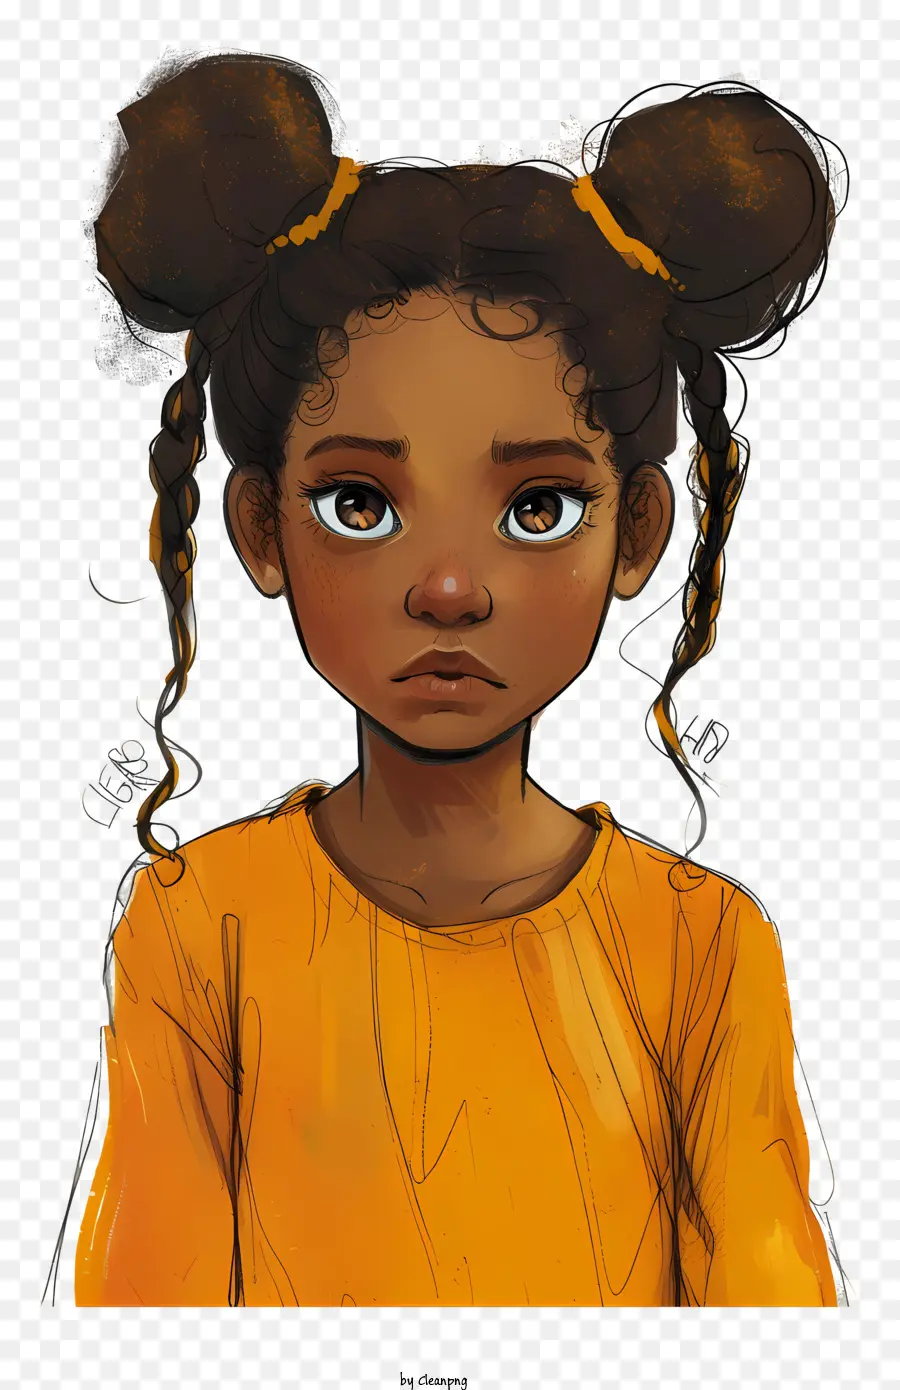 bambina - Immagine resa di ragazza premurosa con pelle scura e capelli intrecciati